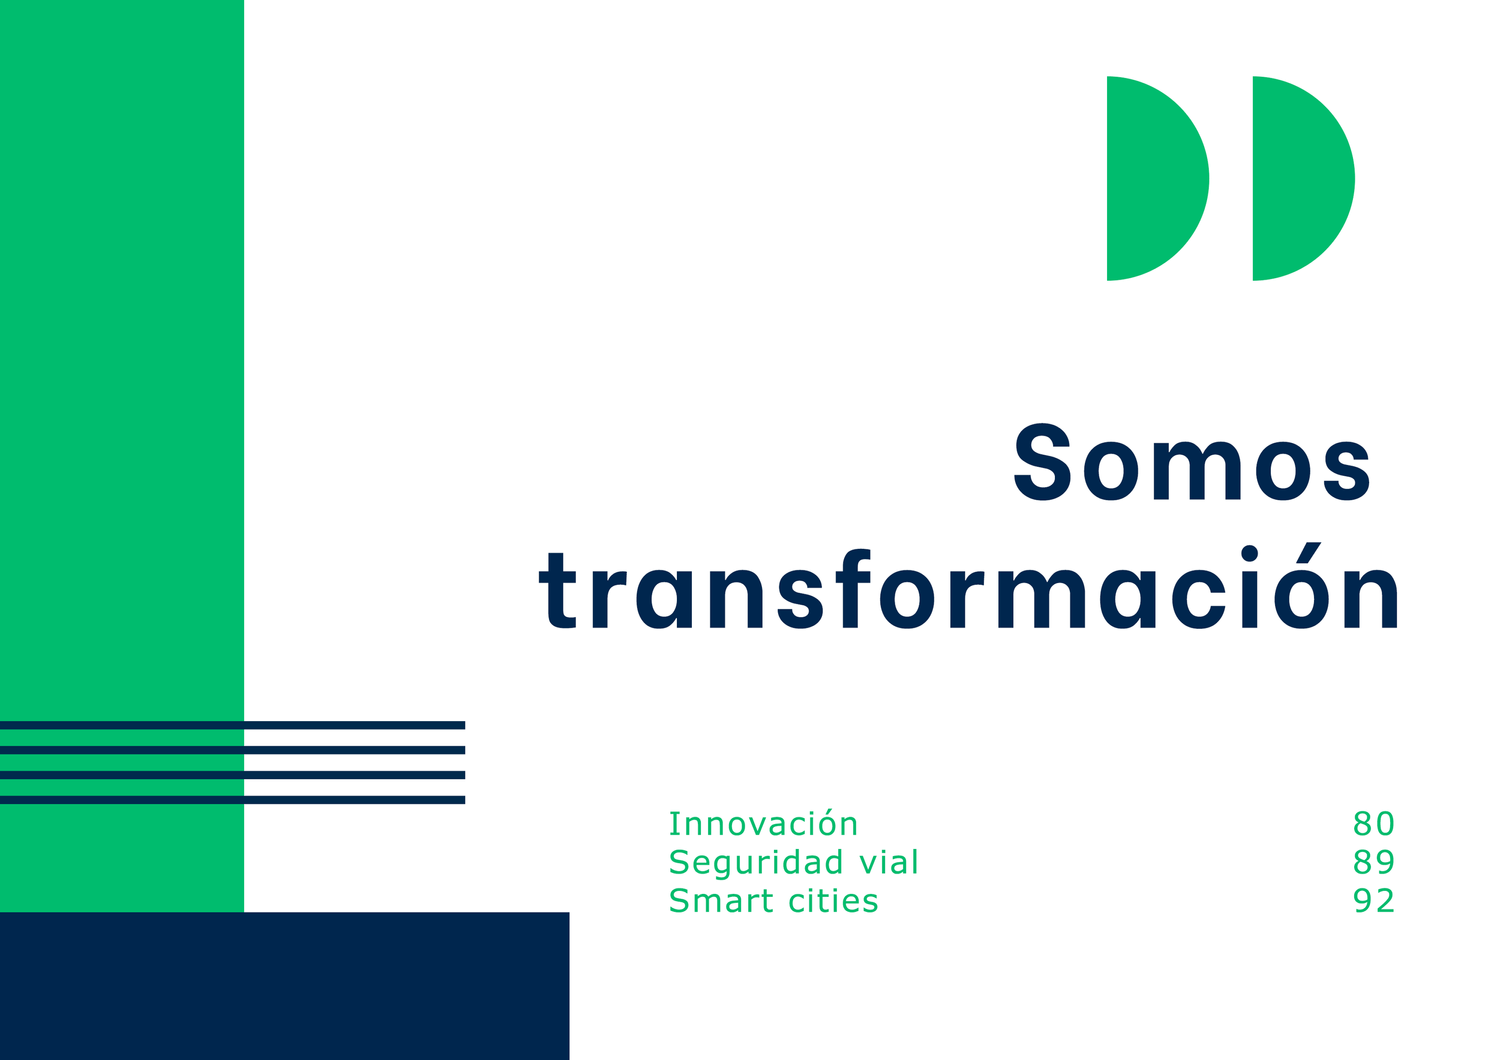 Diseño gráfico con el texto "somos transformación" en letras grandes, complementado con las palabras "innovación" y "seguridad vial" y los números "80 89 92". Utiliza bloques verdes y azules con formas abstractas.